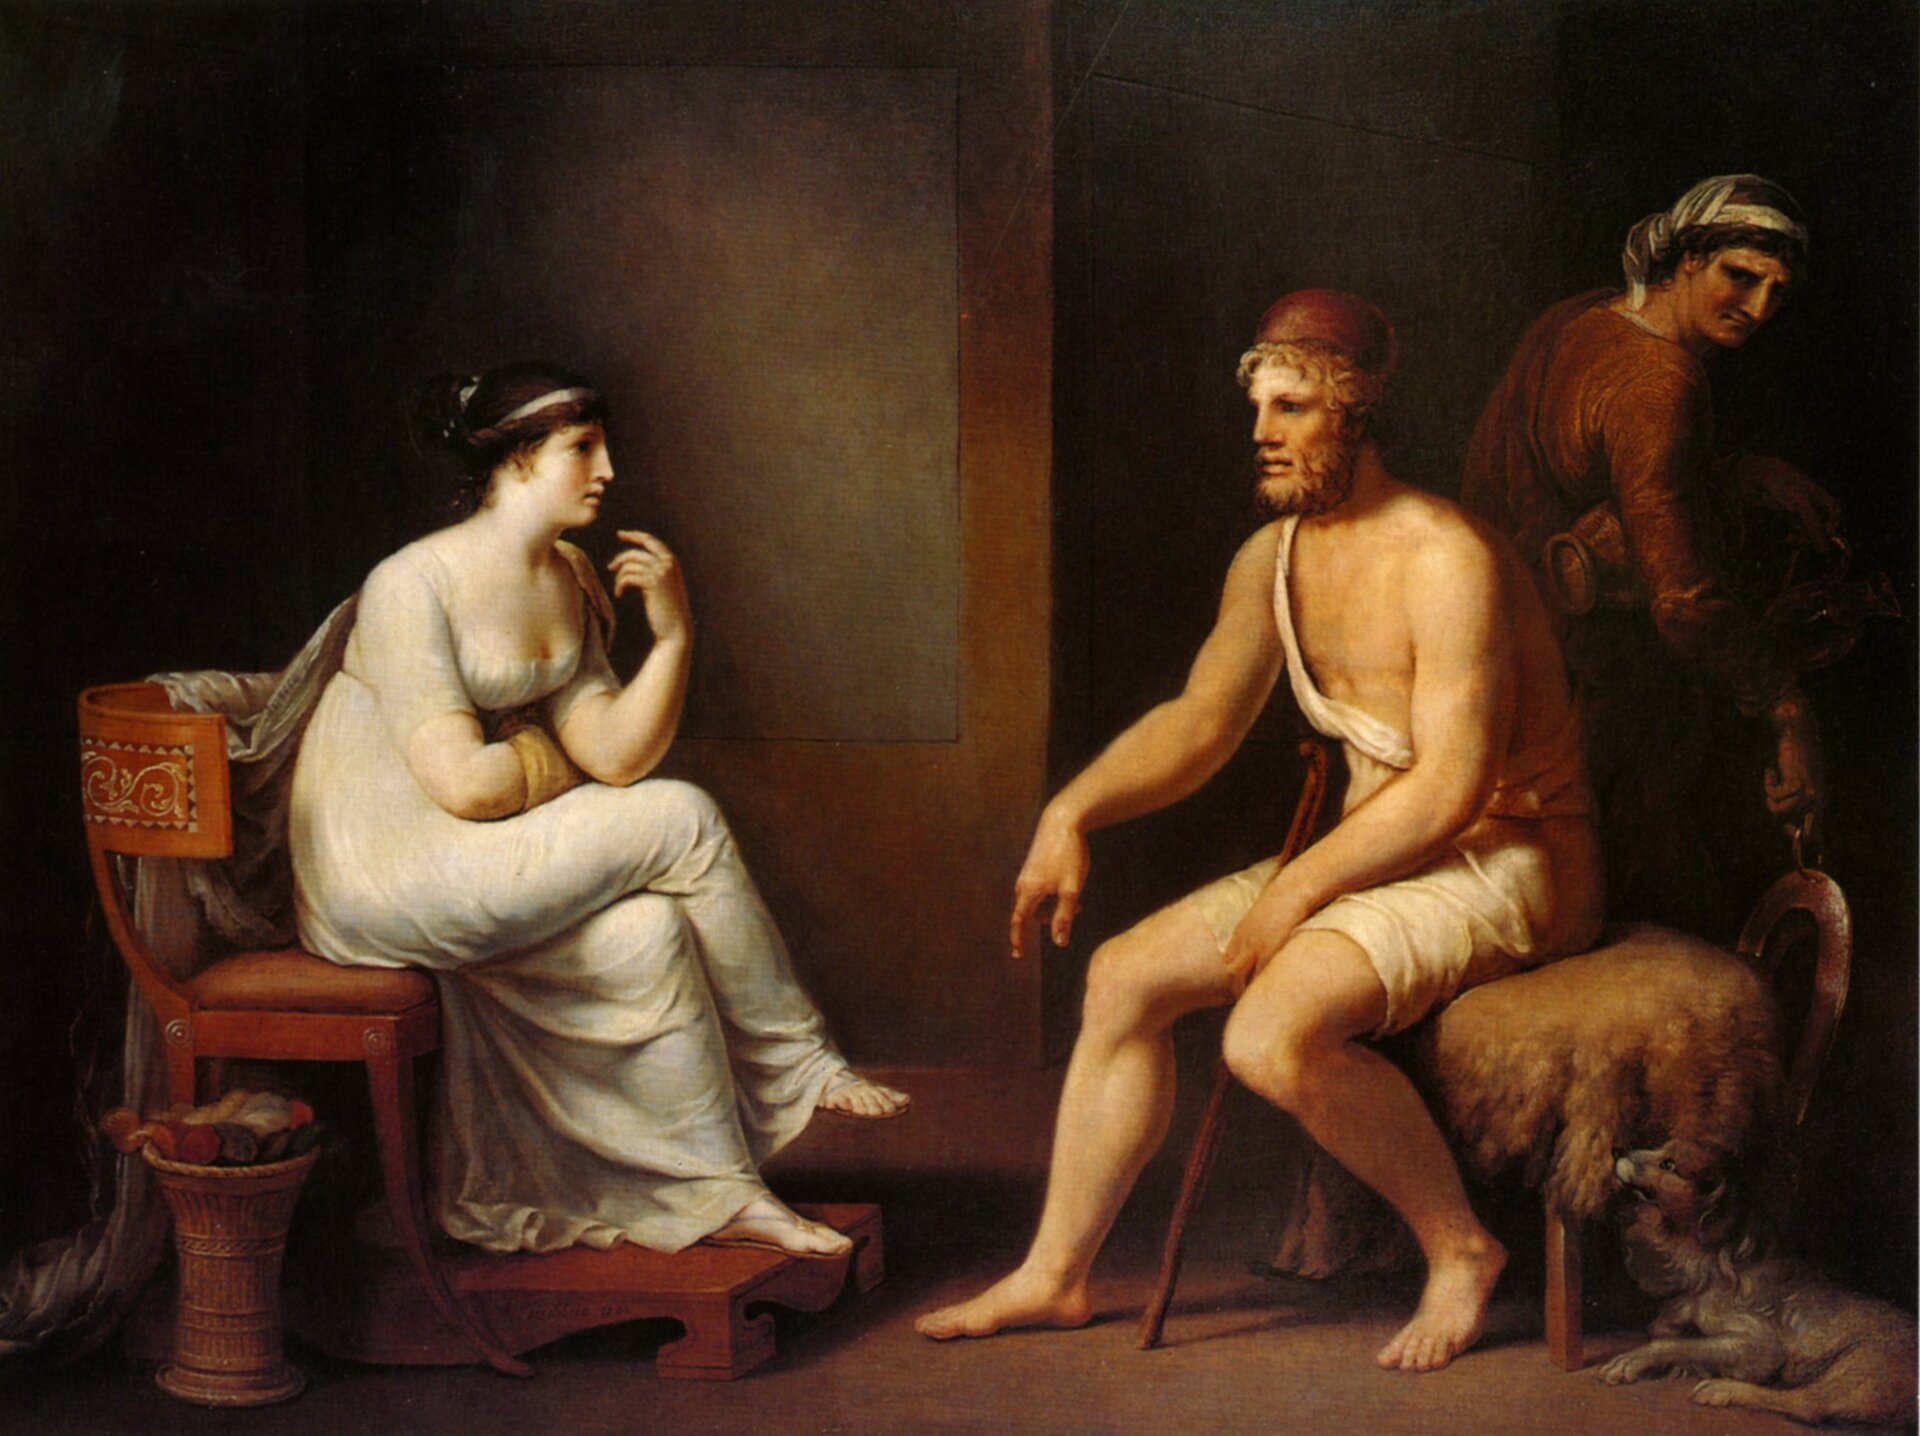 Odyseusz i Penelopa Źródło: Johann Heinrich Wilhelm Tischbein, Odyseusz i Penelopa, 1802, olej na płótnie, domena publiczna.